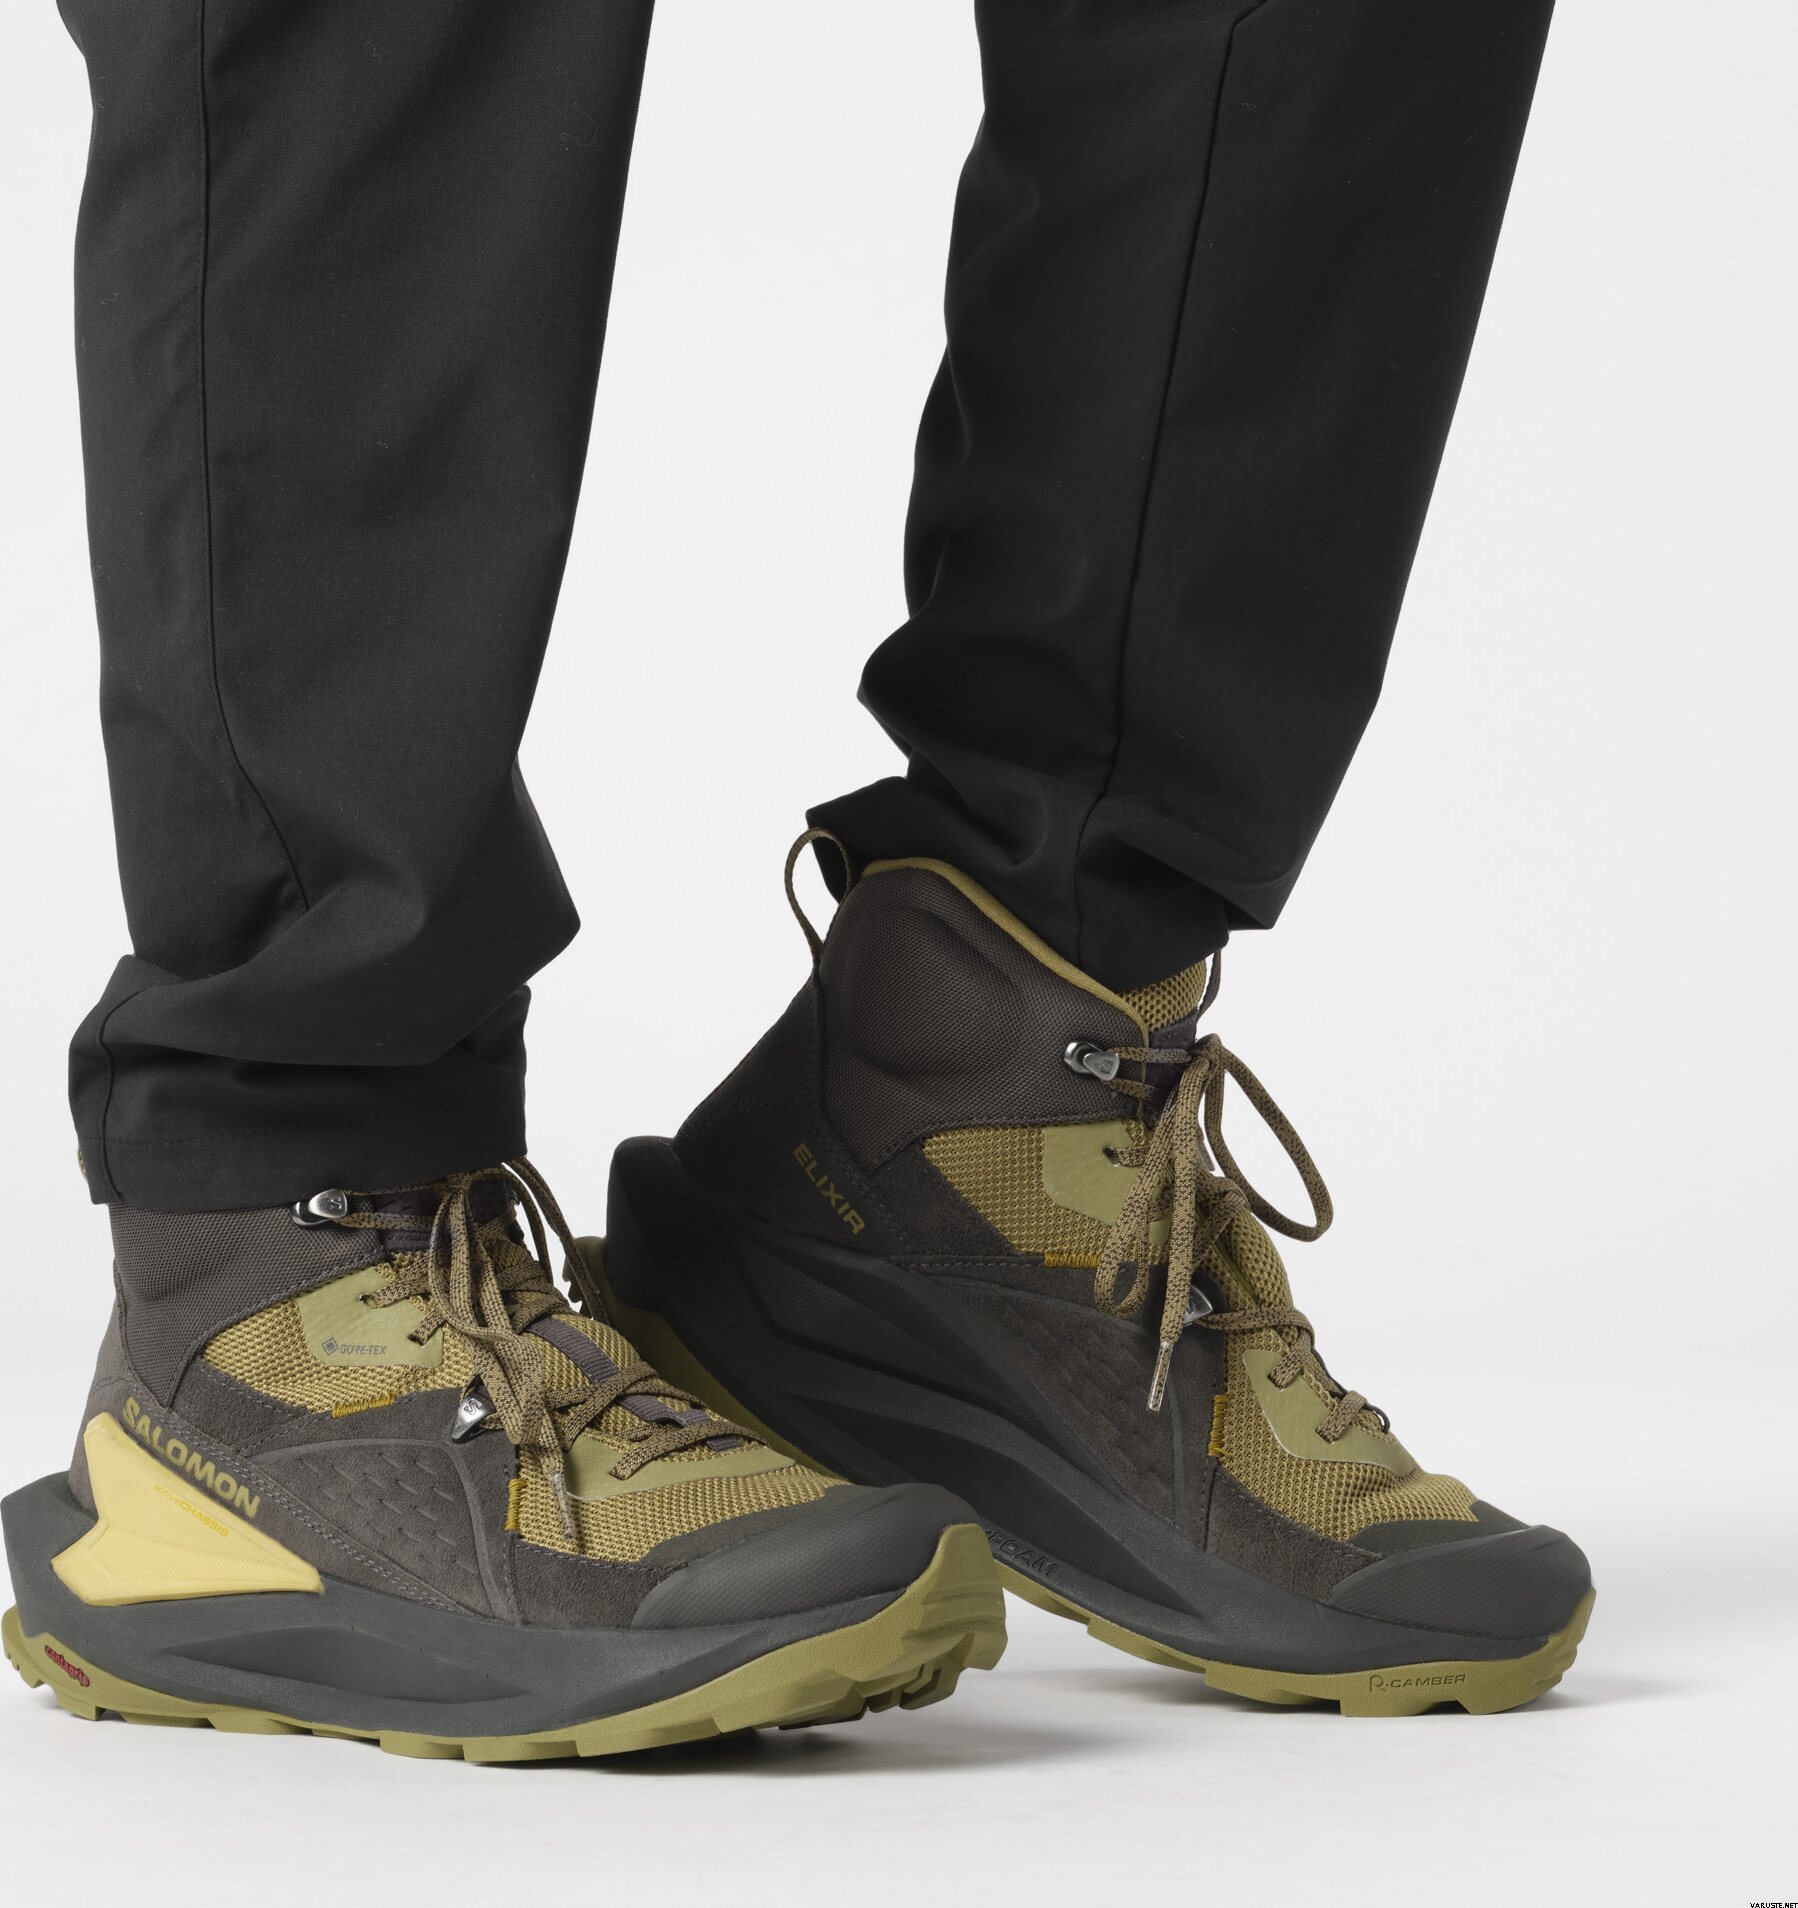 Salomon Elixir Mid GTX Mens | Men's outdoor shoes | Varuste.net English